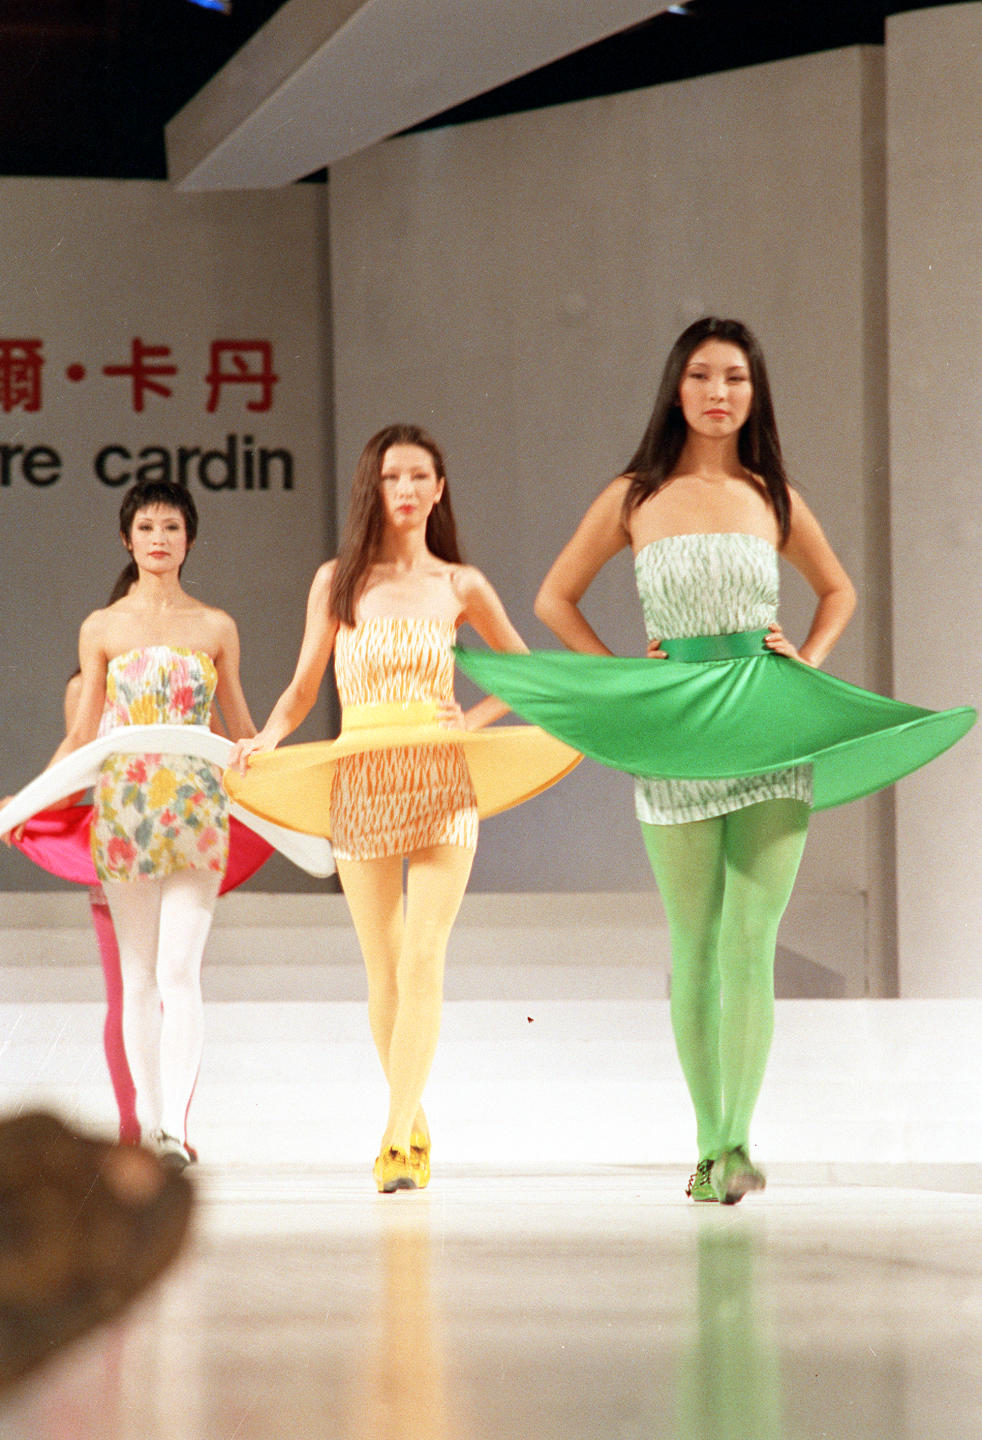 94中國國際服裝服飾博覽會于1994年4月27日至5月1日在北京隆重舉行。法國時裝設計大師皮爾·卡丹舉行了專場服裝表演，中法兩國名模同臺展示了皮爾·卡丹最新設計的300套國際流行時裝精品。新華社記者戴紀明攝（1994年5月3日發）